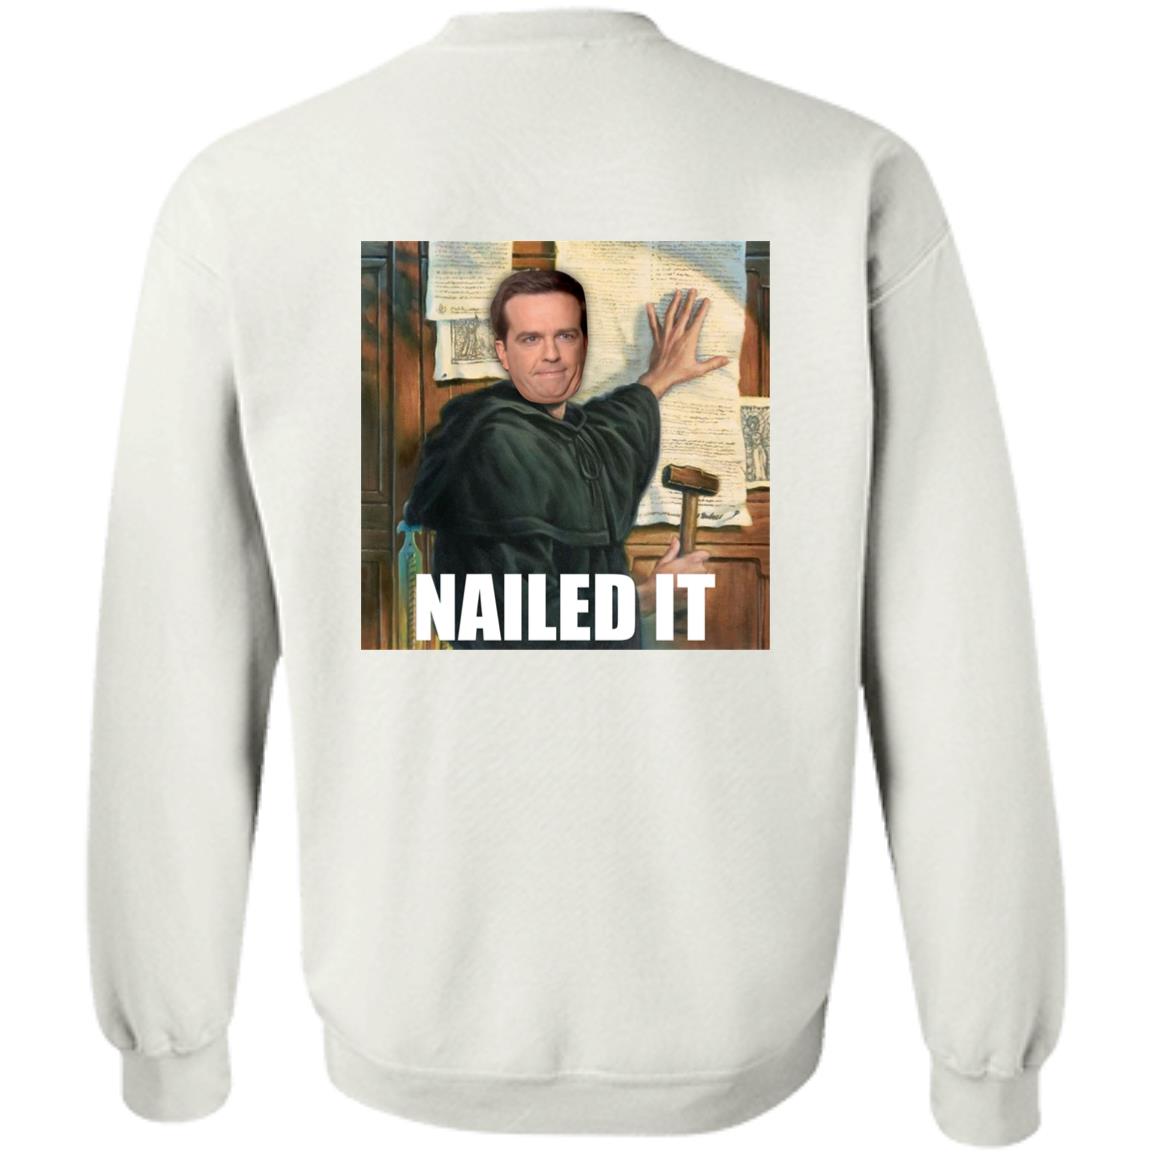 Nailed It (Unisex Sweatshirt)